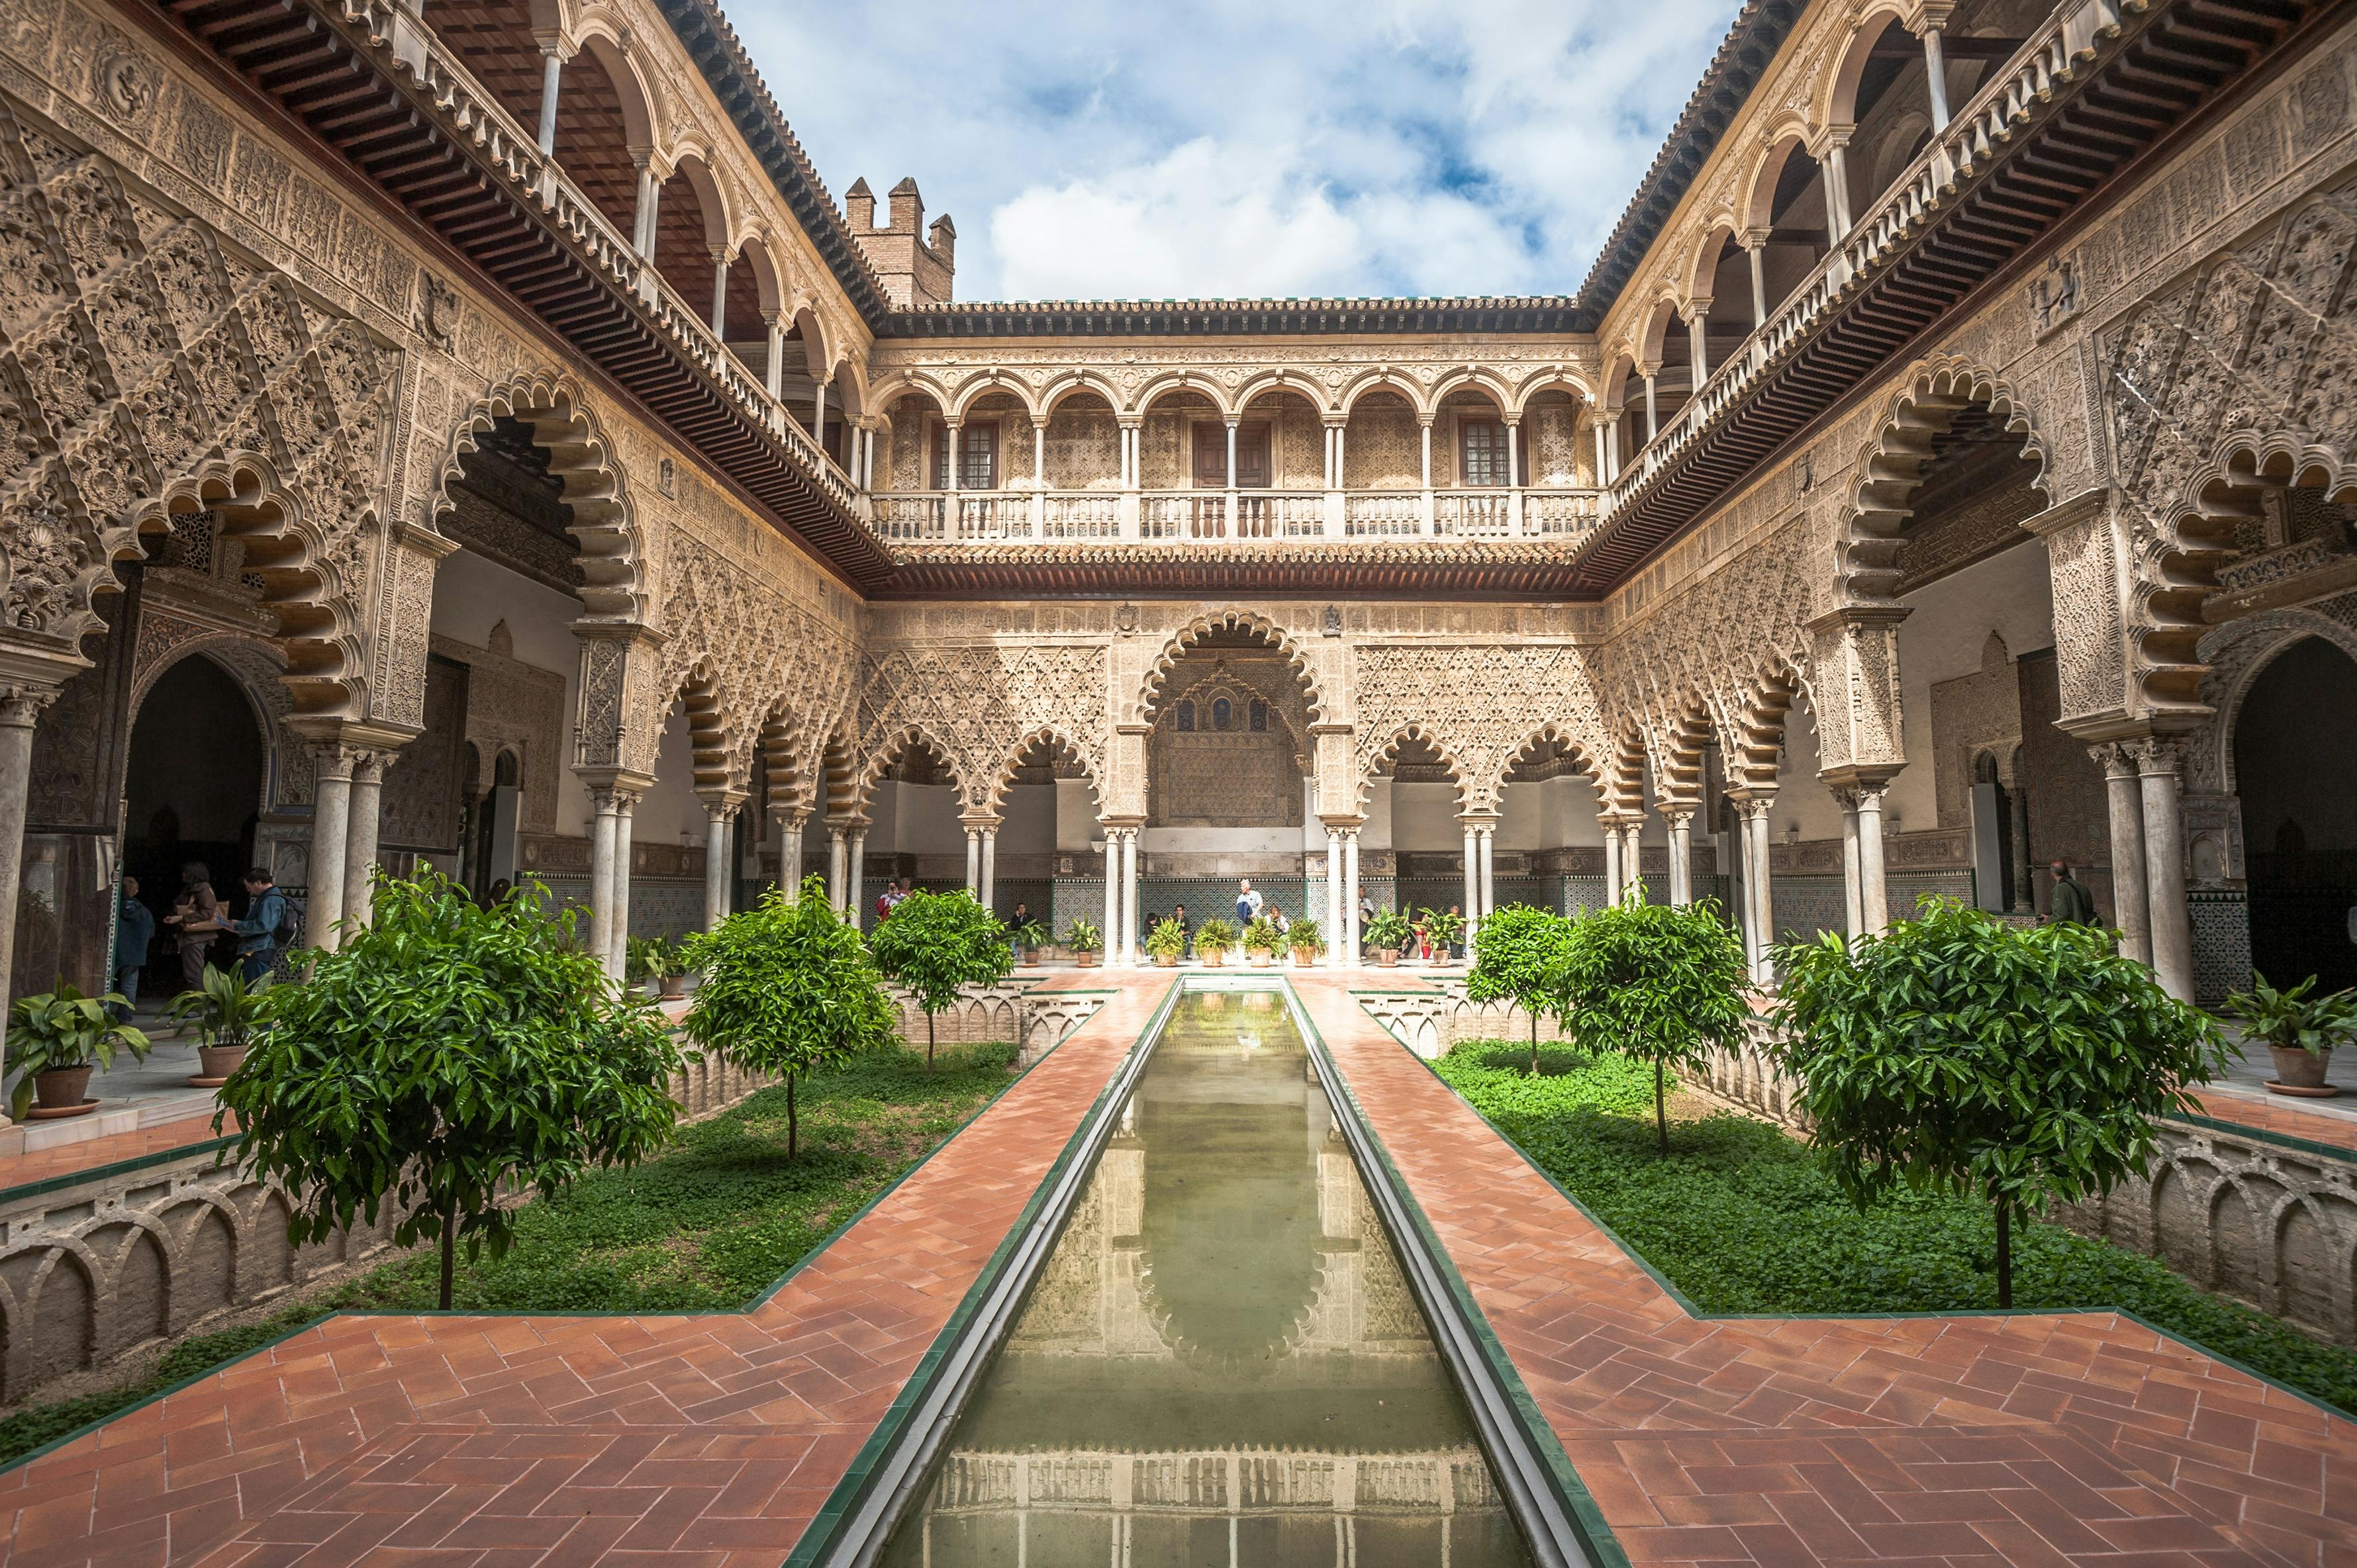 Alcázar en kathedraal van Sevilla skip-the-lines tickets en bezoek met gids